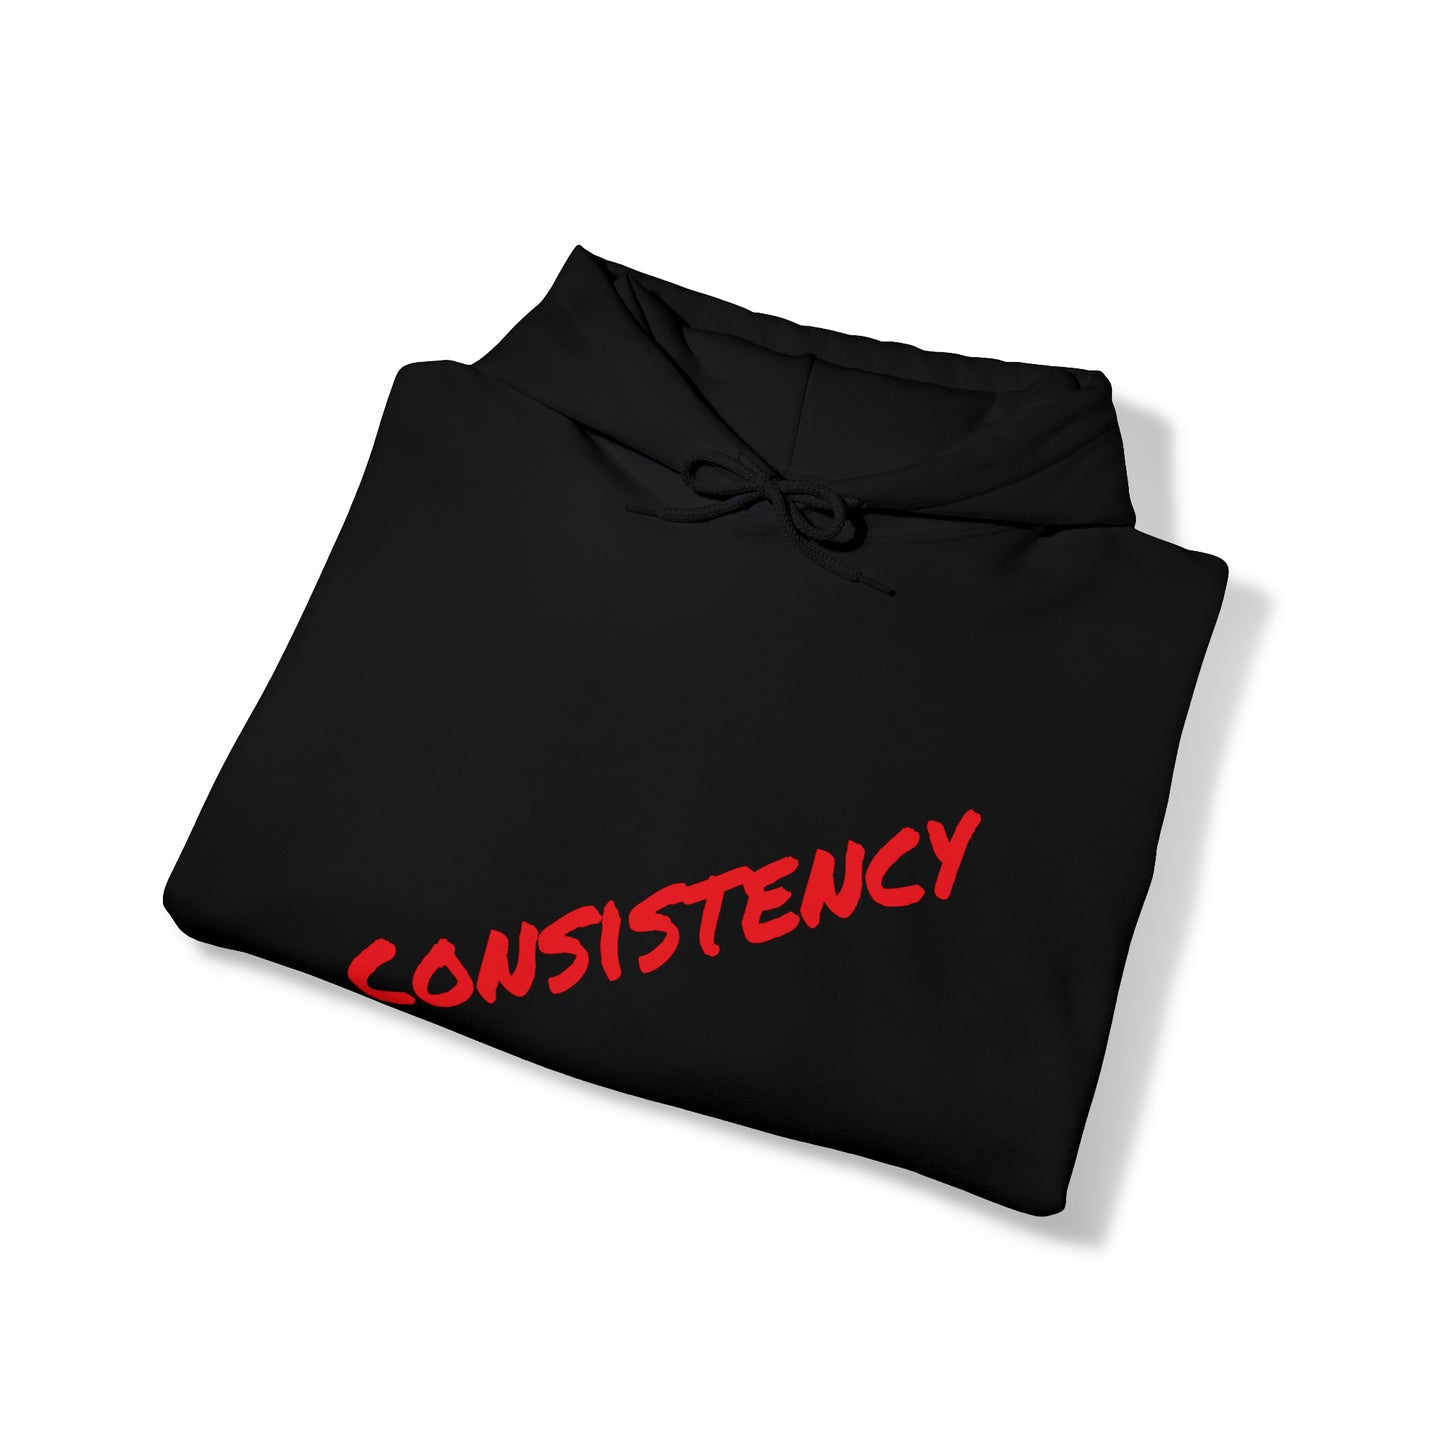 GMG Wear CONSISTENCY Unisex Heavy Blend™ Hooded Sweatshirt